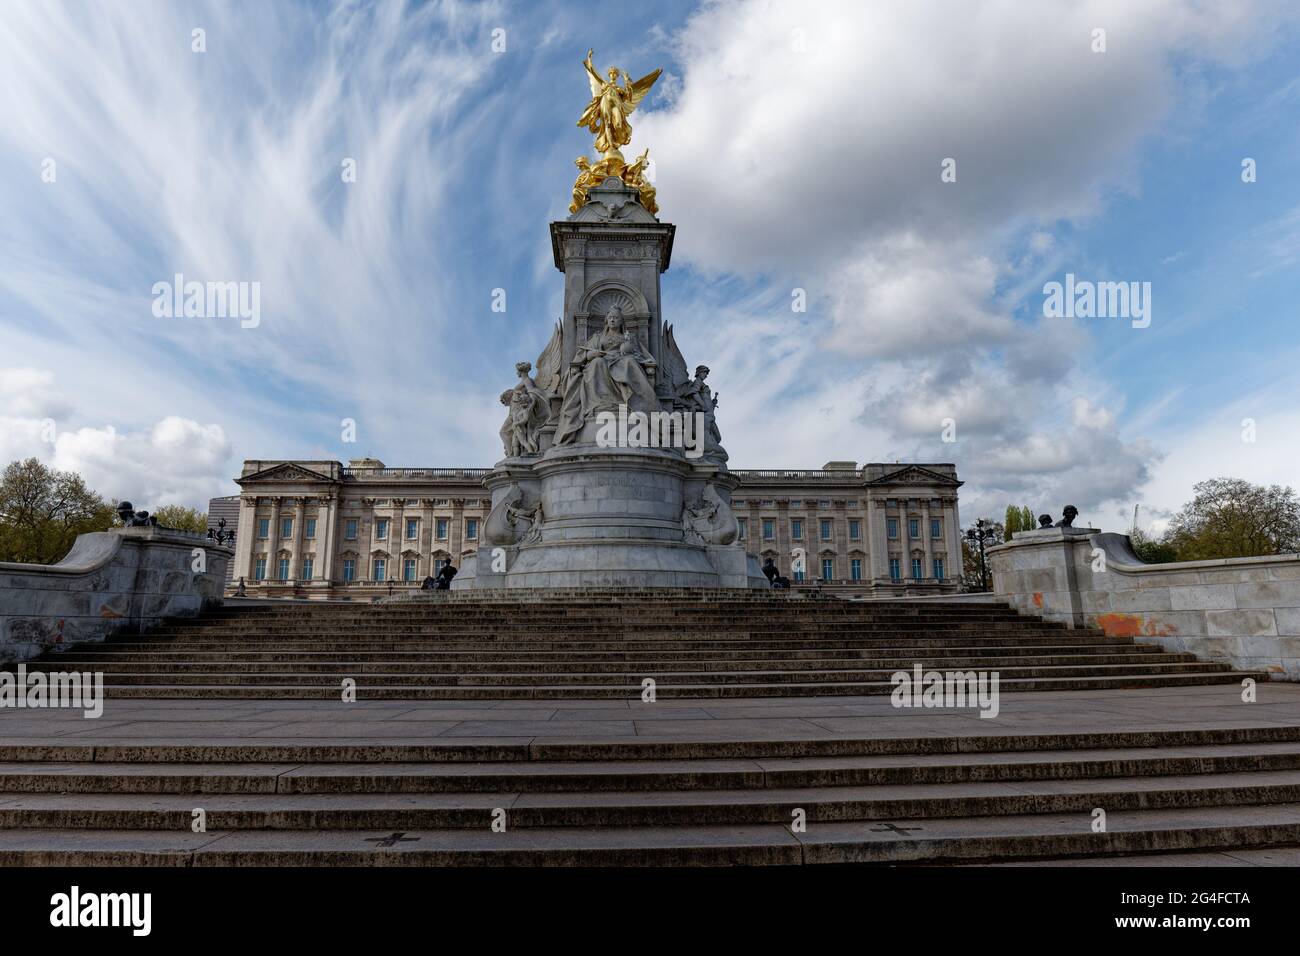 Il Victoria Memorial si trova di fronte al Buckingam Palace. Progettato da Thomas Brock con una figura vincente alata dorata in alto Foto Stock